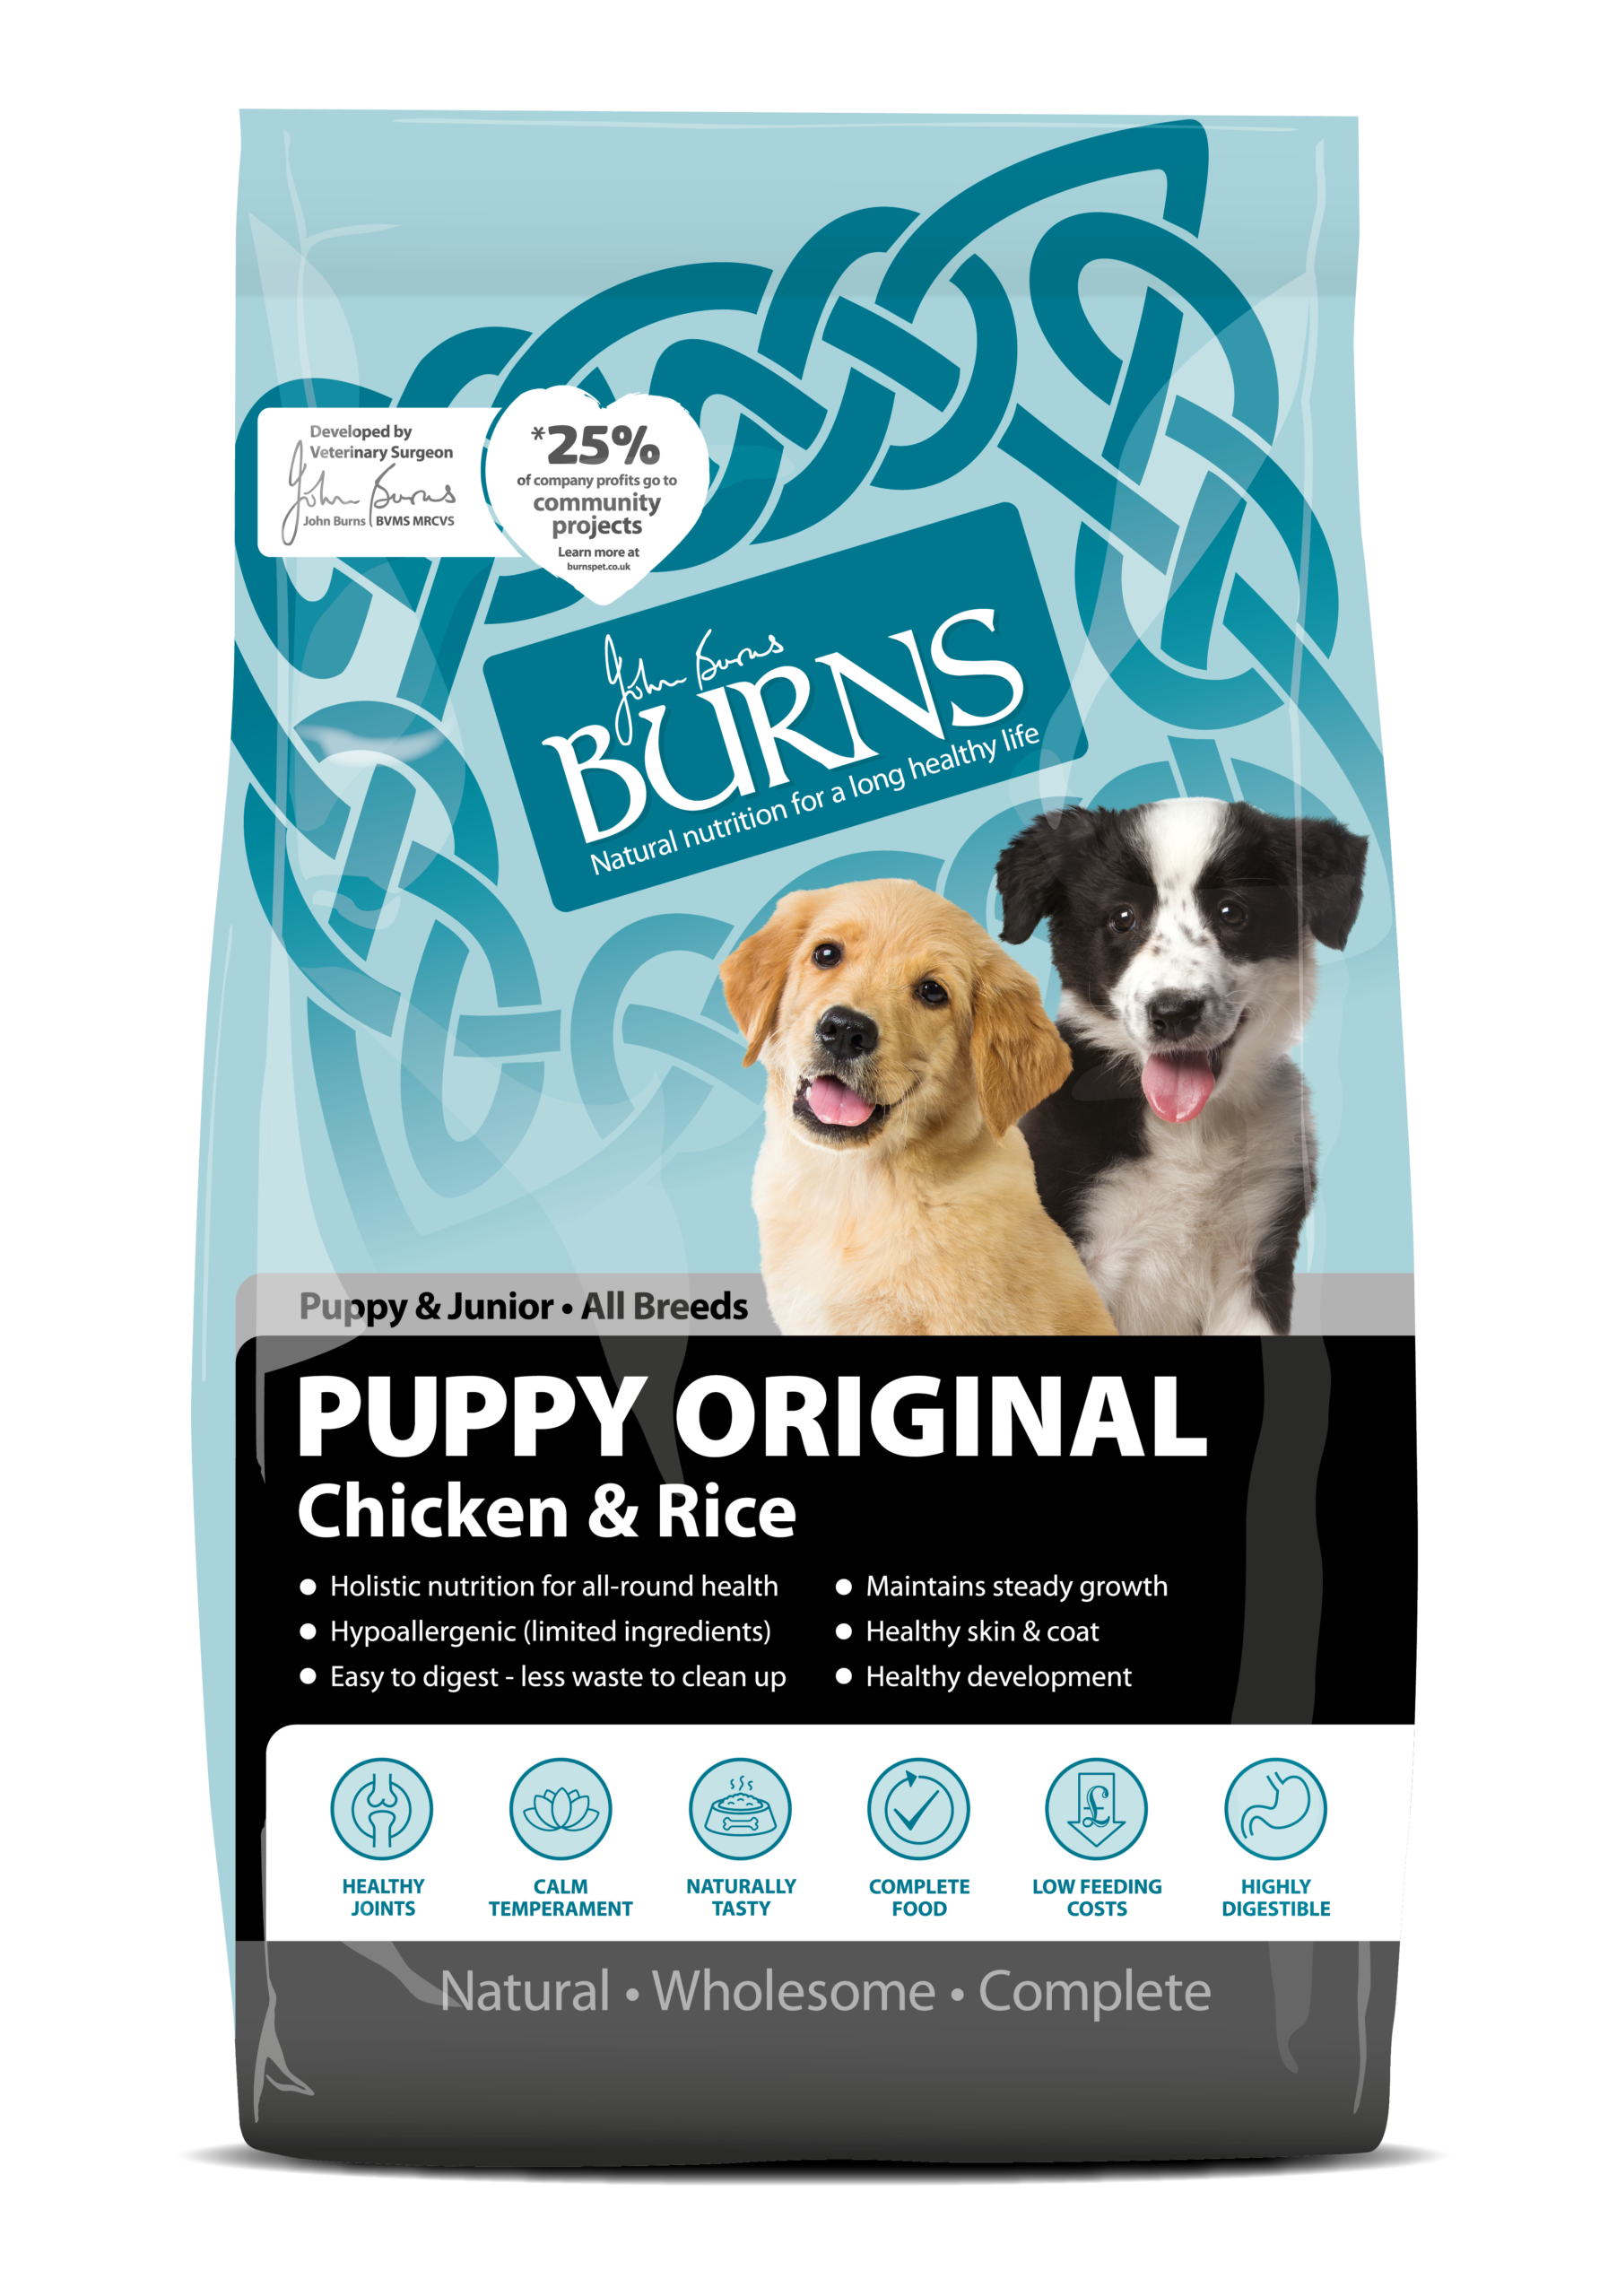 Puppy Original Chicken & Rice